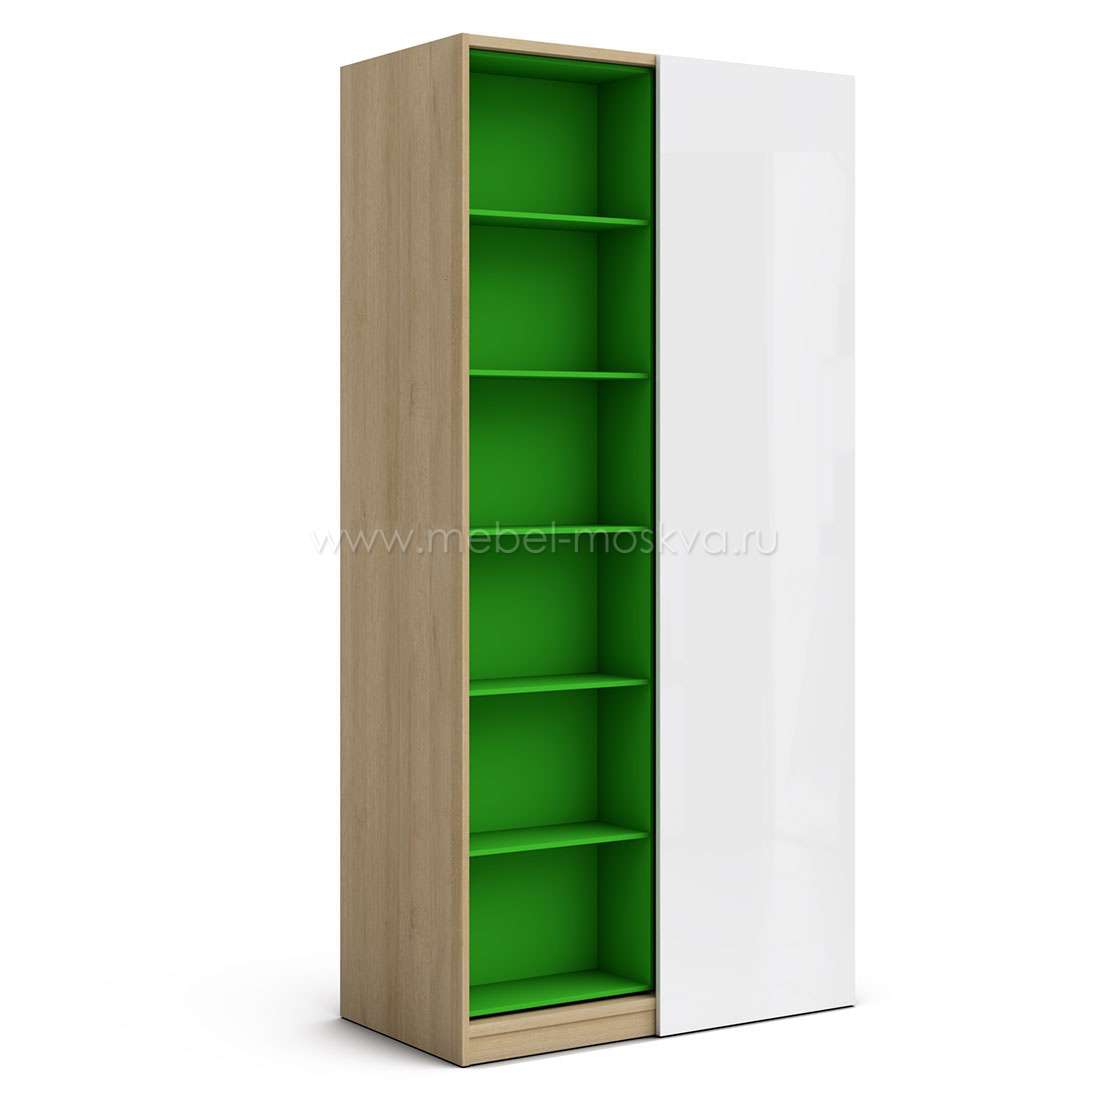 Шкаф со сдвижным стеллажом Магнолия (дуб Ривьера/зеленый)